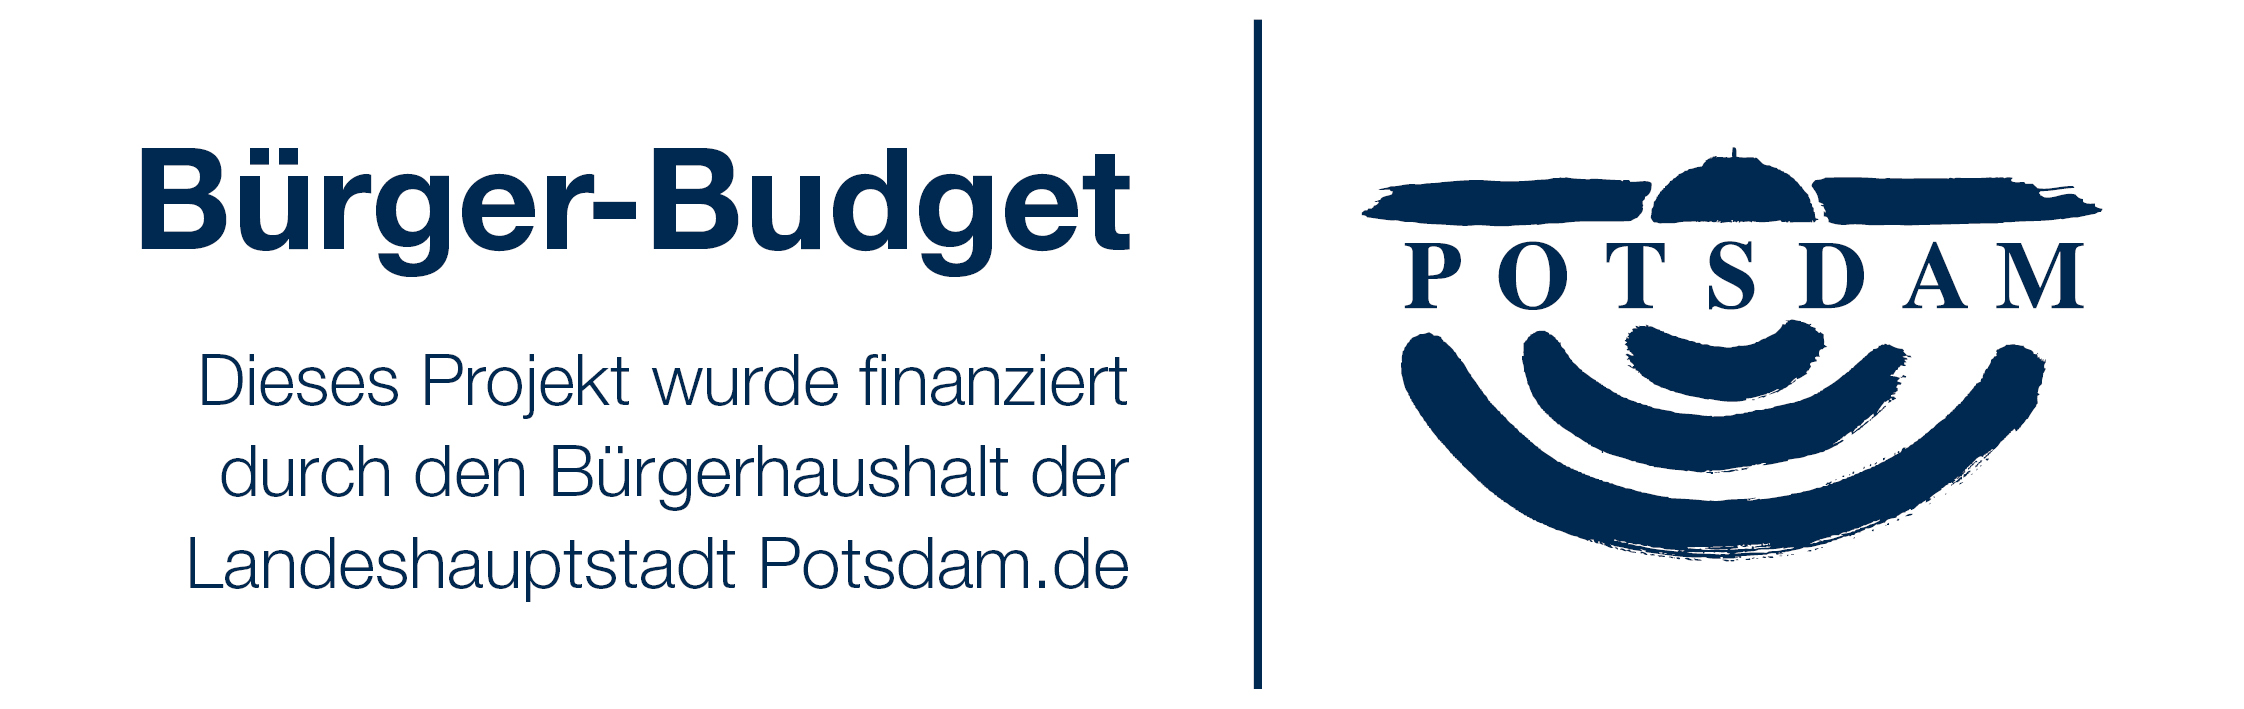 Bürger-Budget